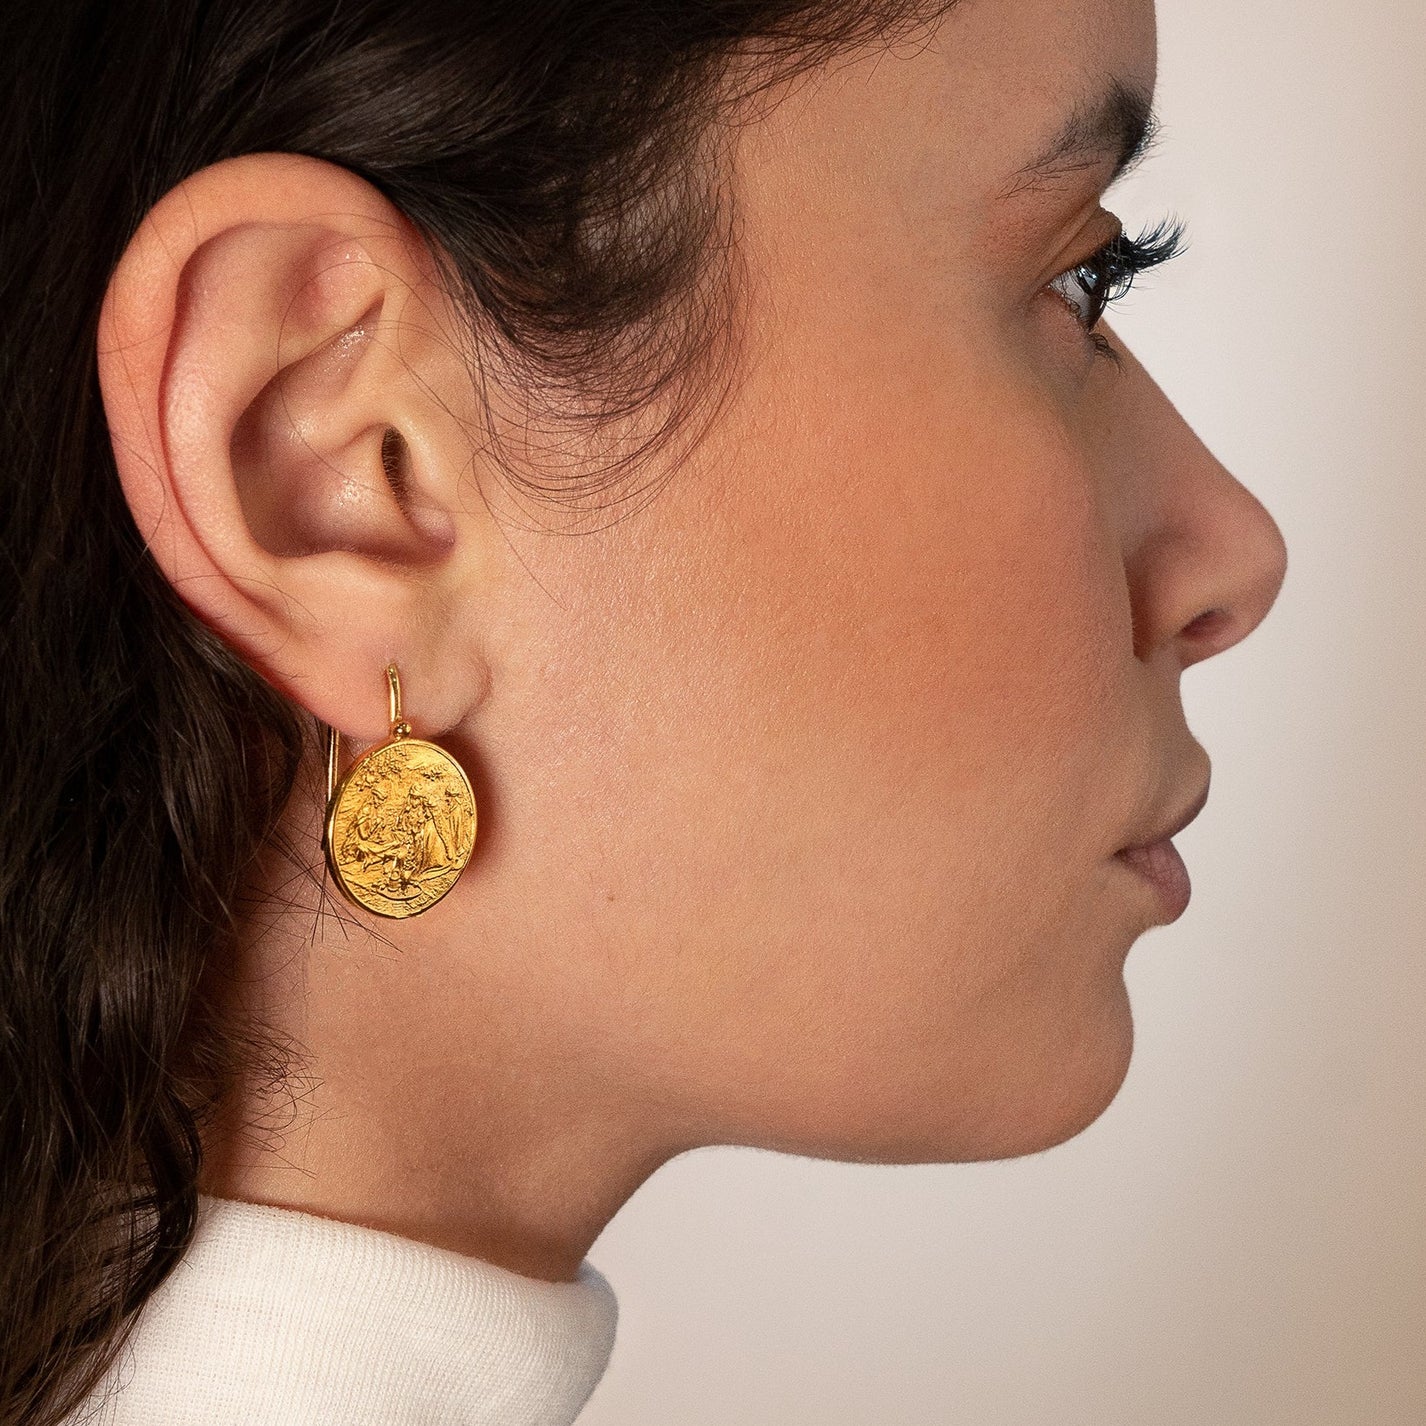 Amitié earrings at the Portes de l'Oasis in Algeria - Atelier Indépendant